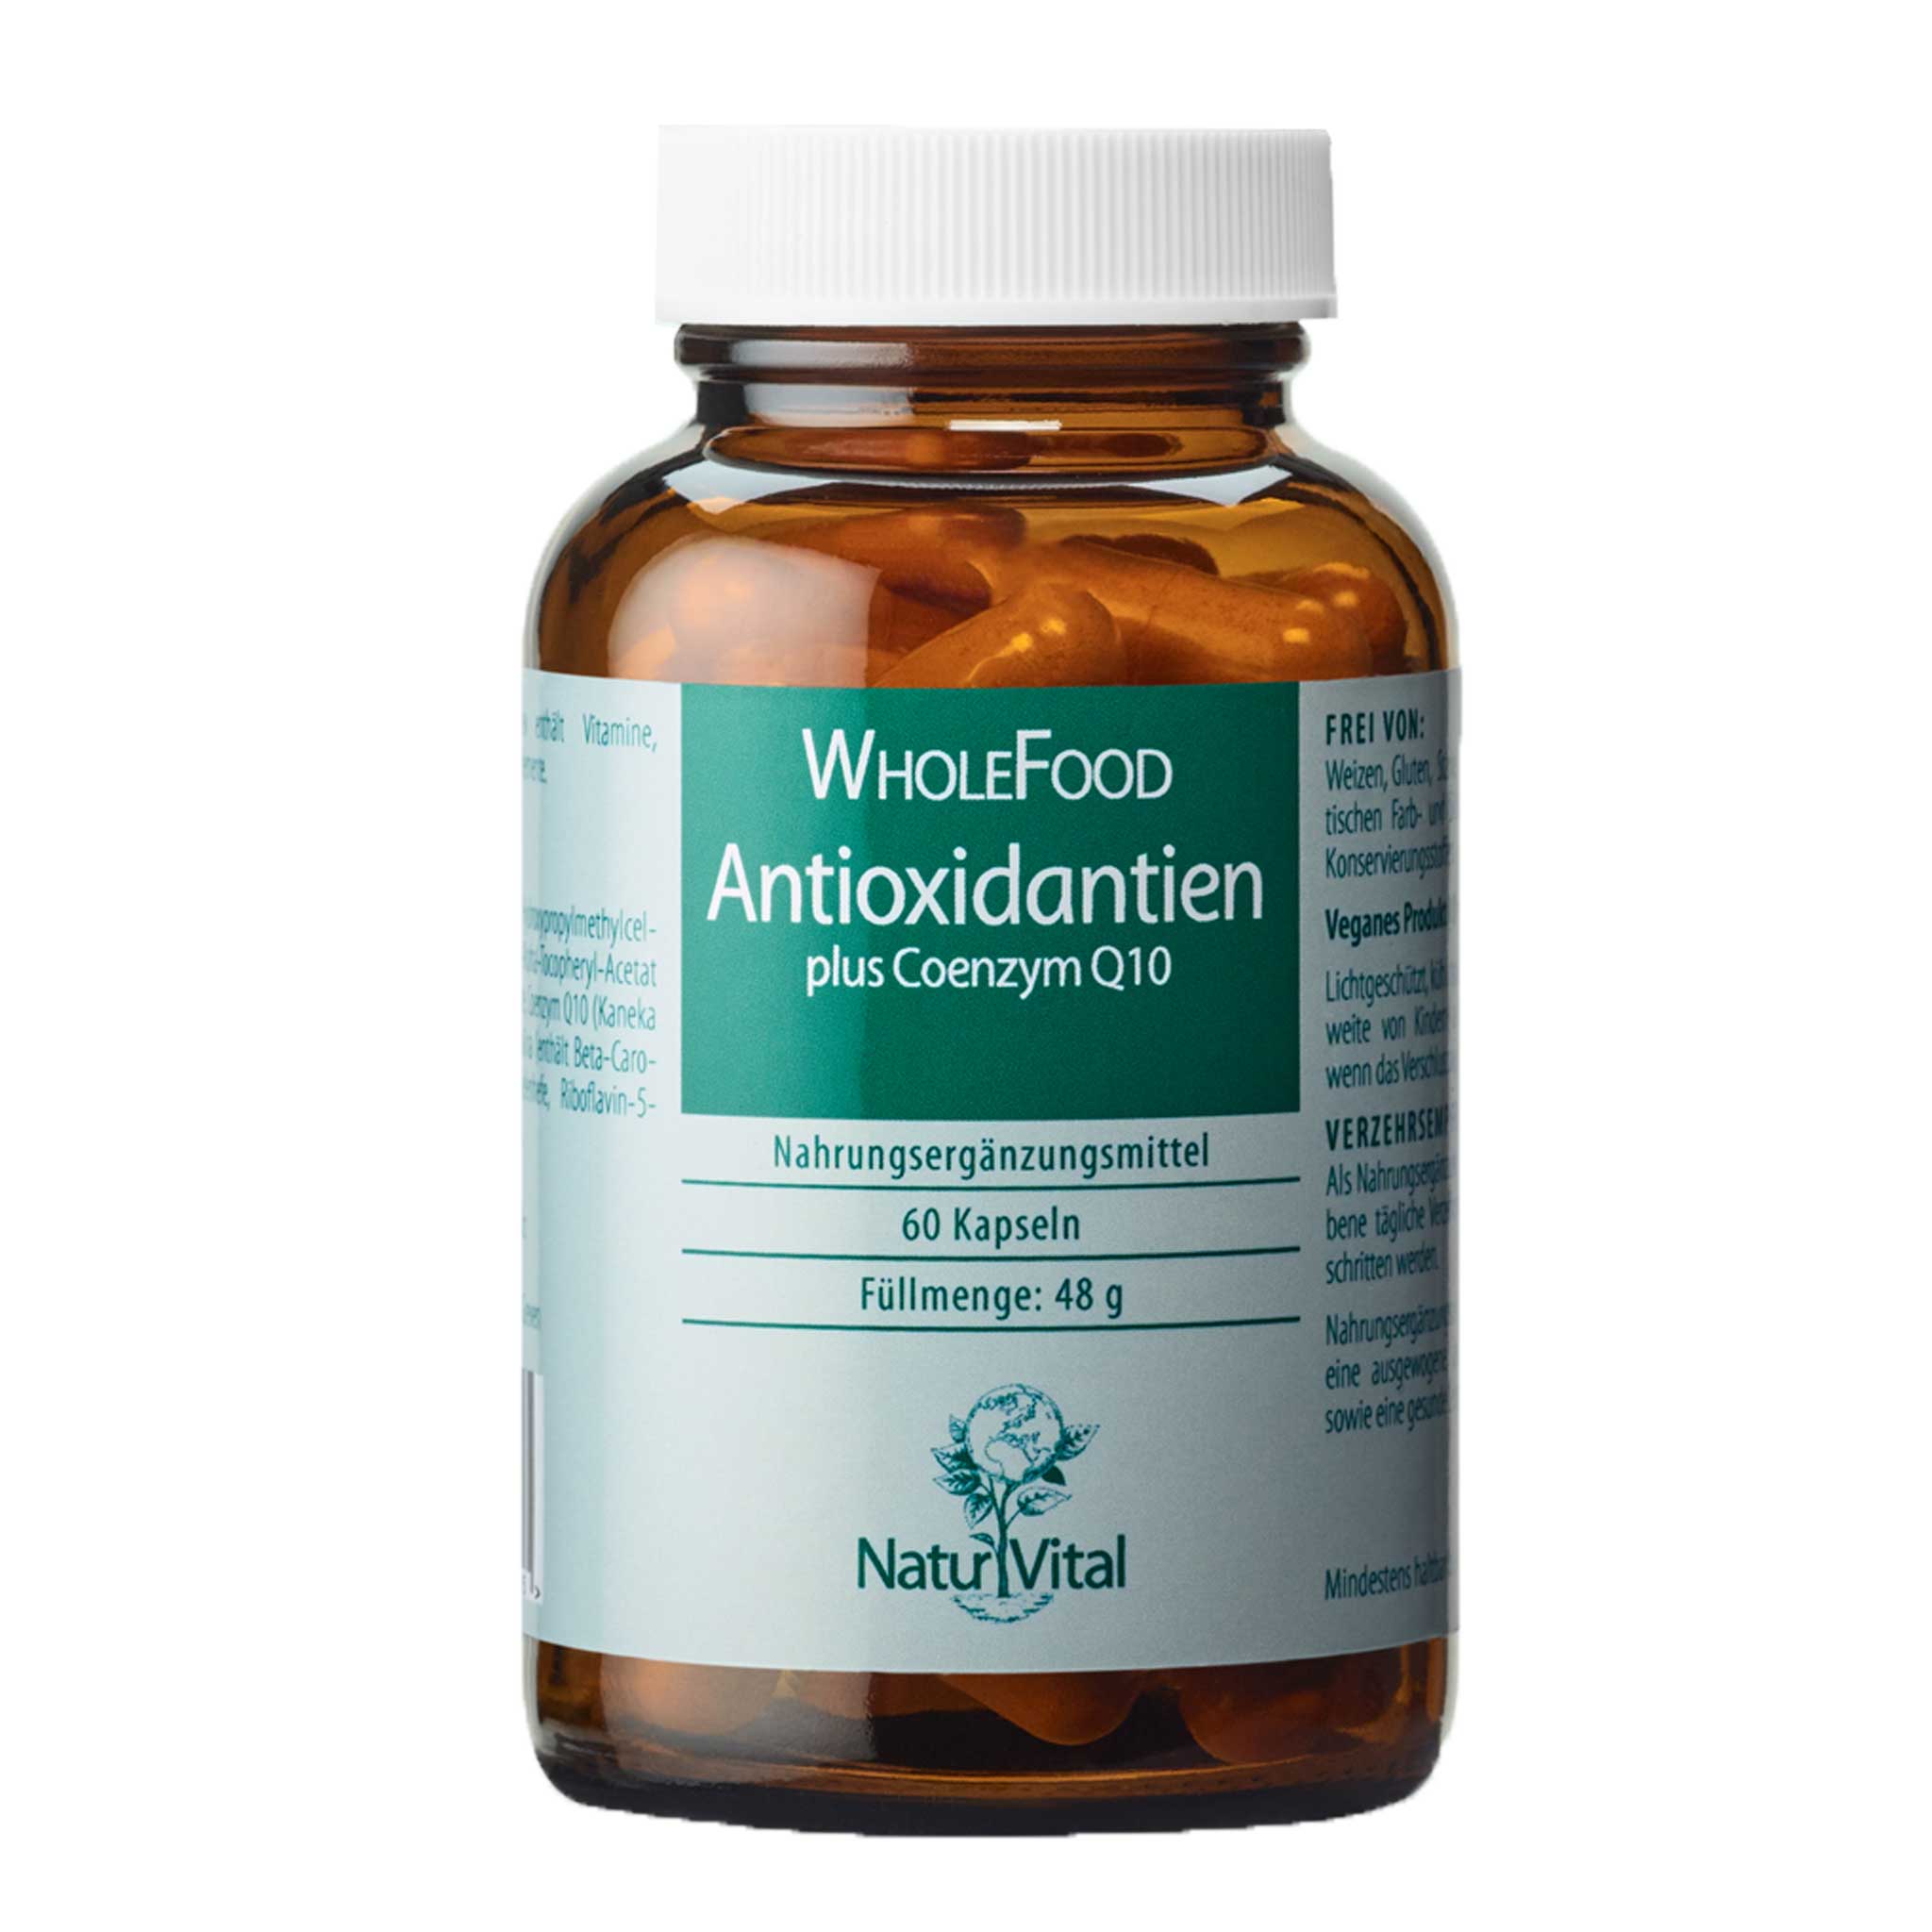 Antioxidantien plus Coenzym Q10 von Natur Vital beinhaltet 60 Kapseln